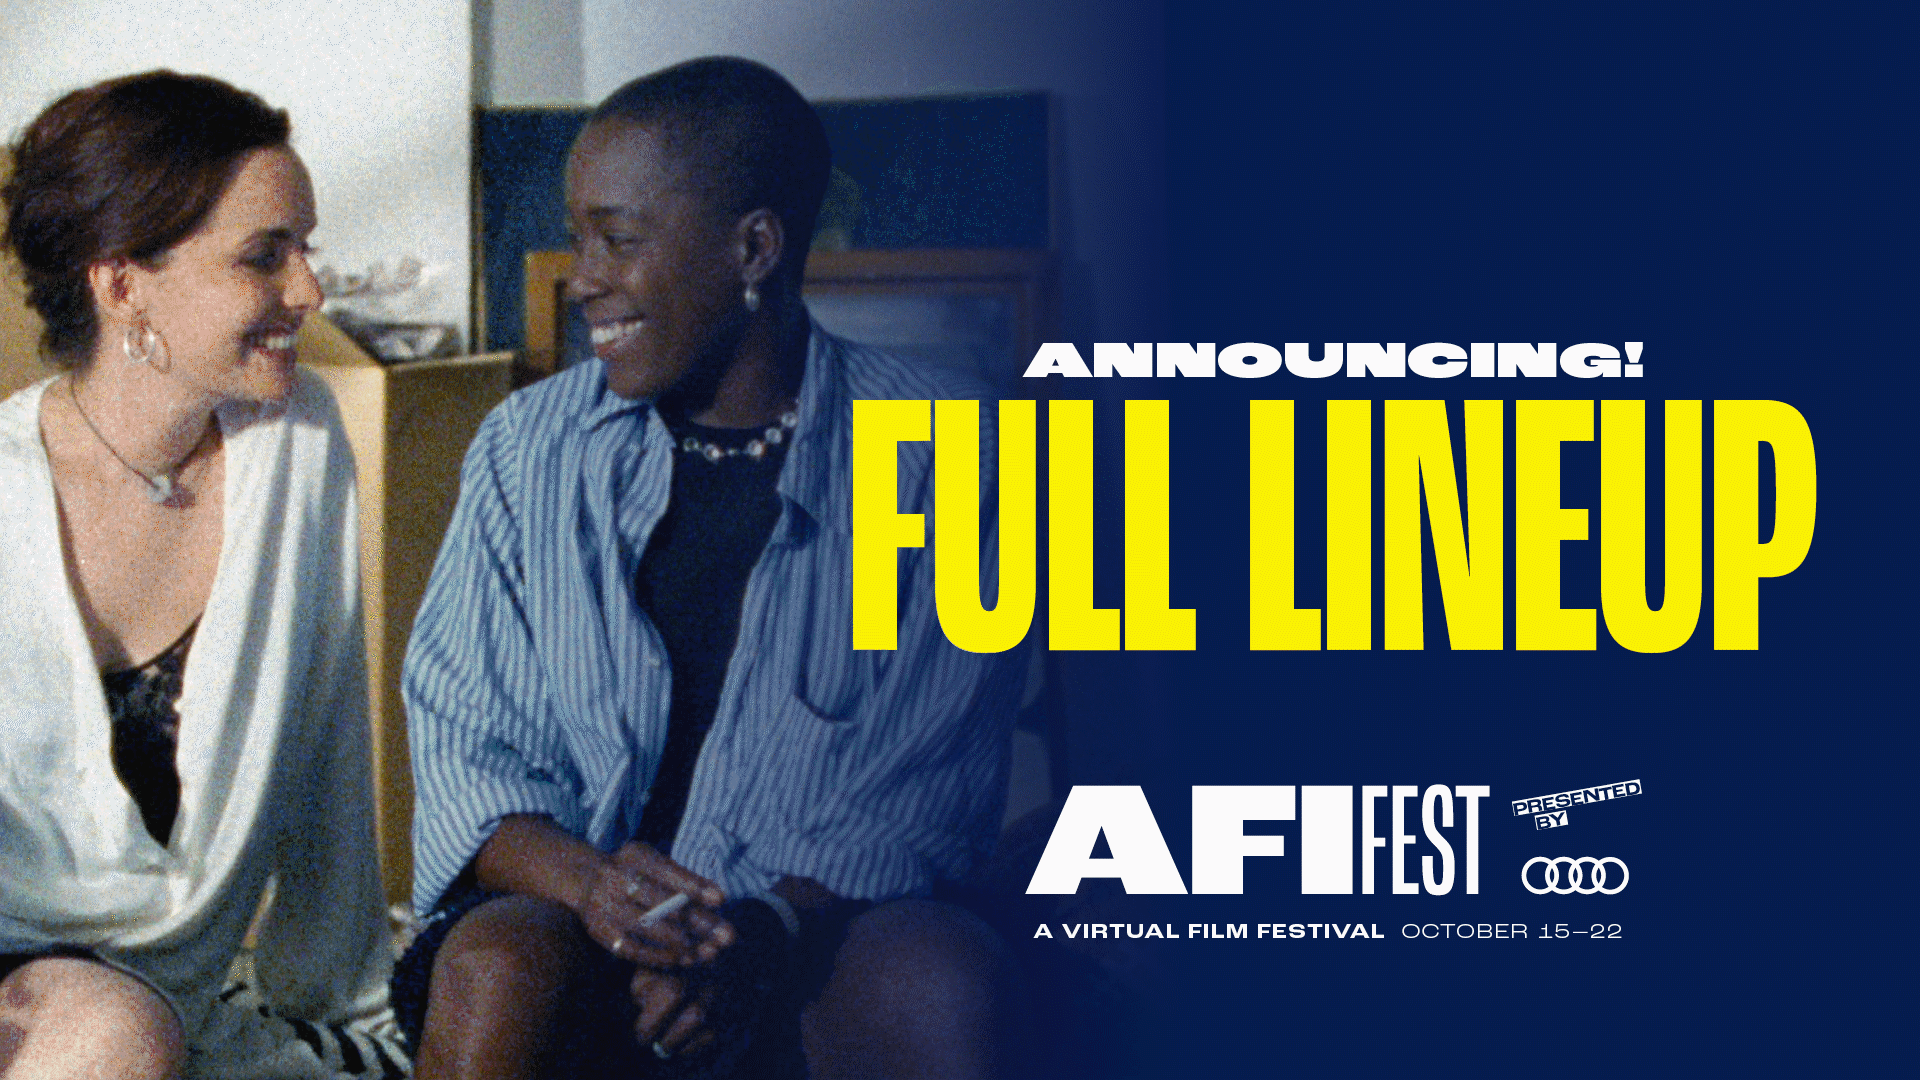 AFI FEST 2020 presented Audi Full Lineup Announced | American Film Institute